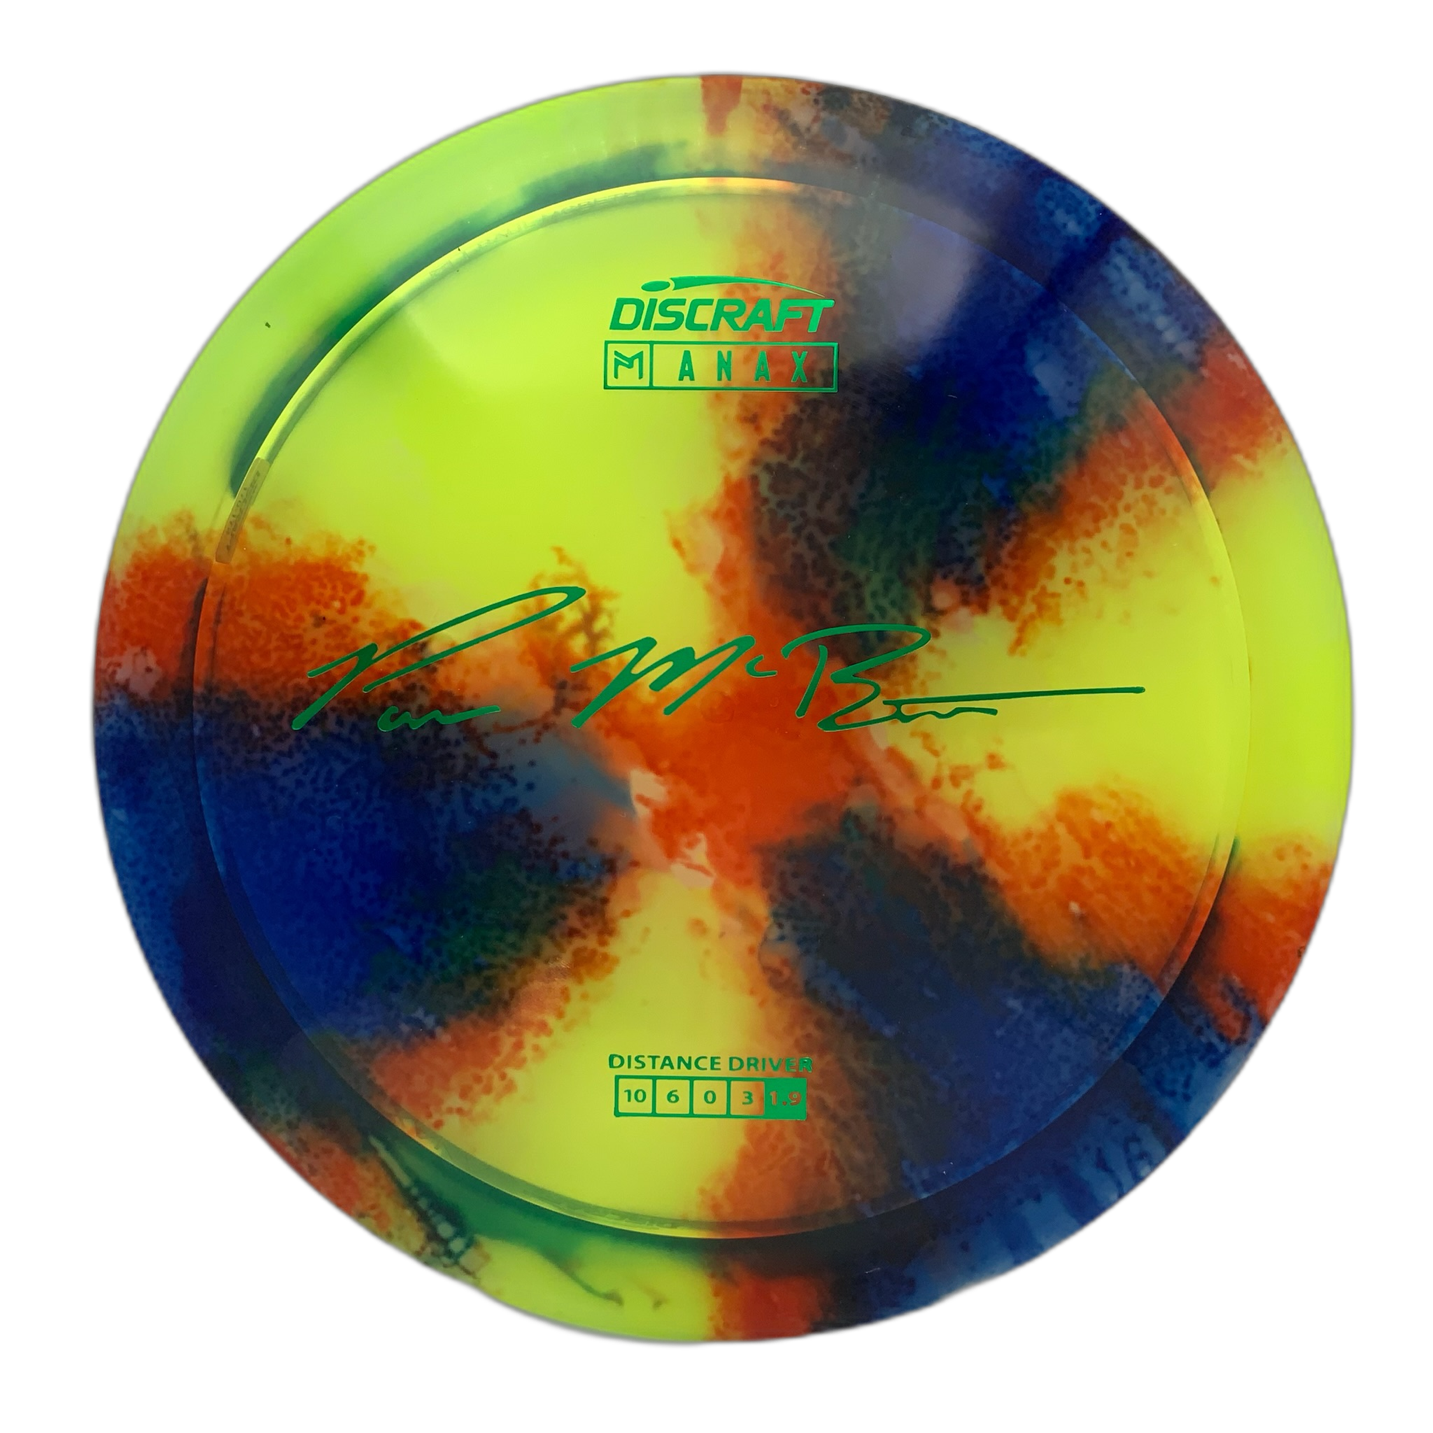 Discraft Anax - Astro Discs TX - Houston Disc Golf